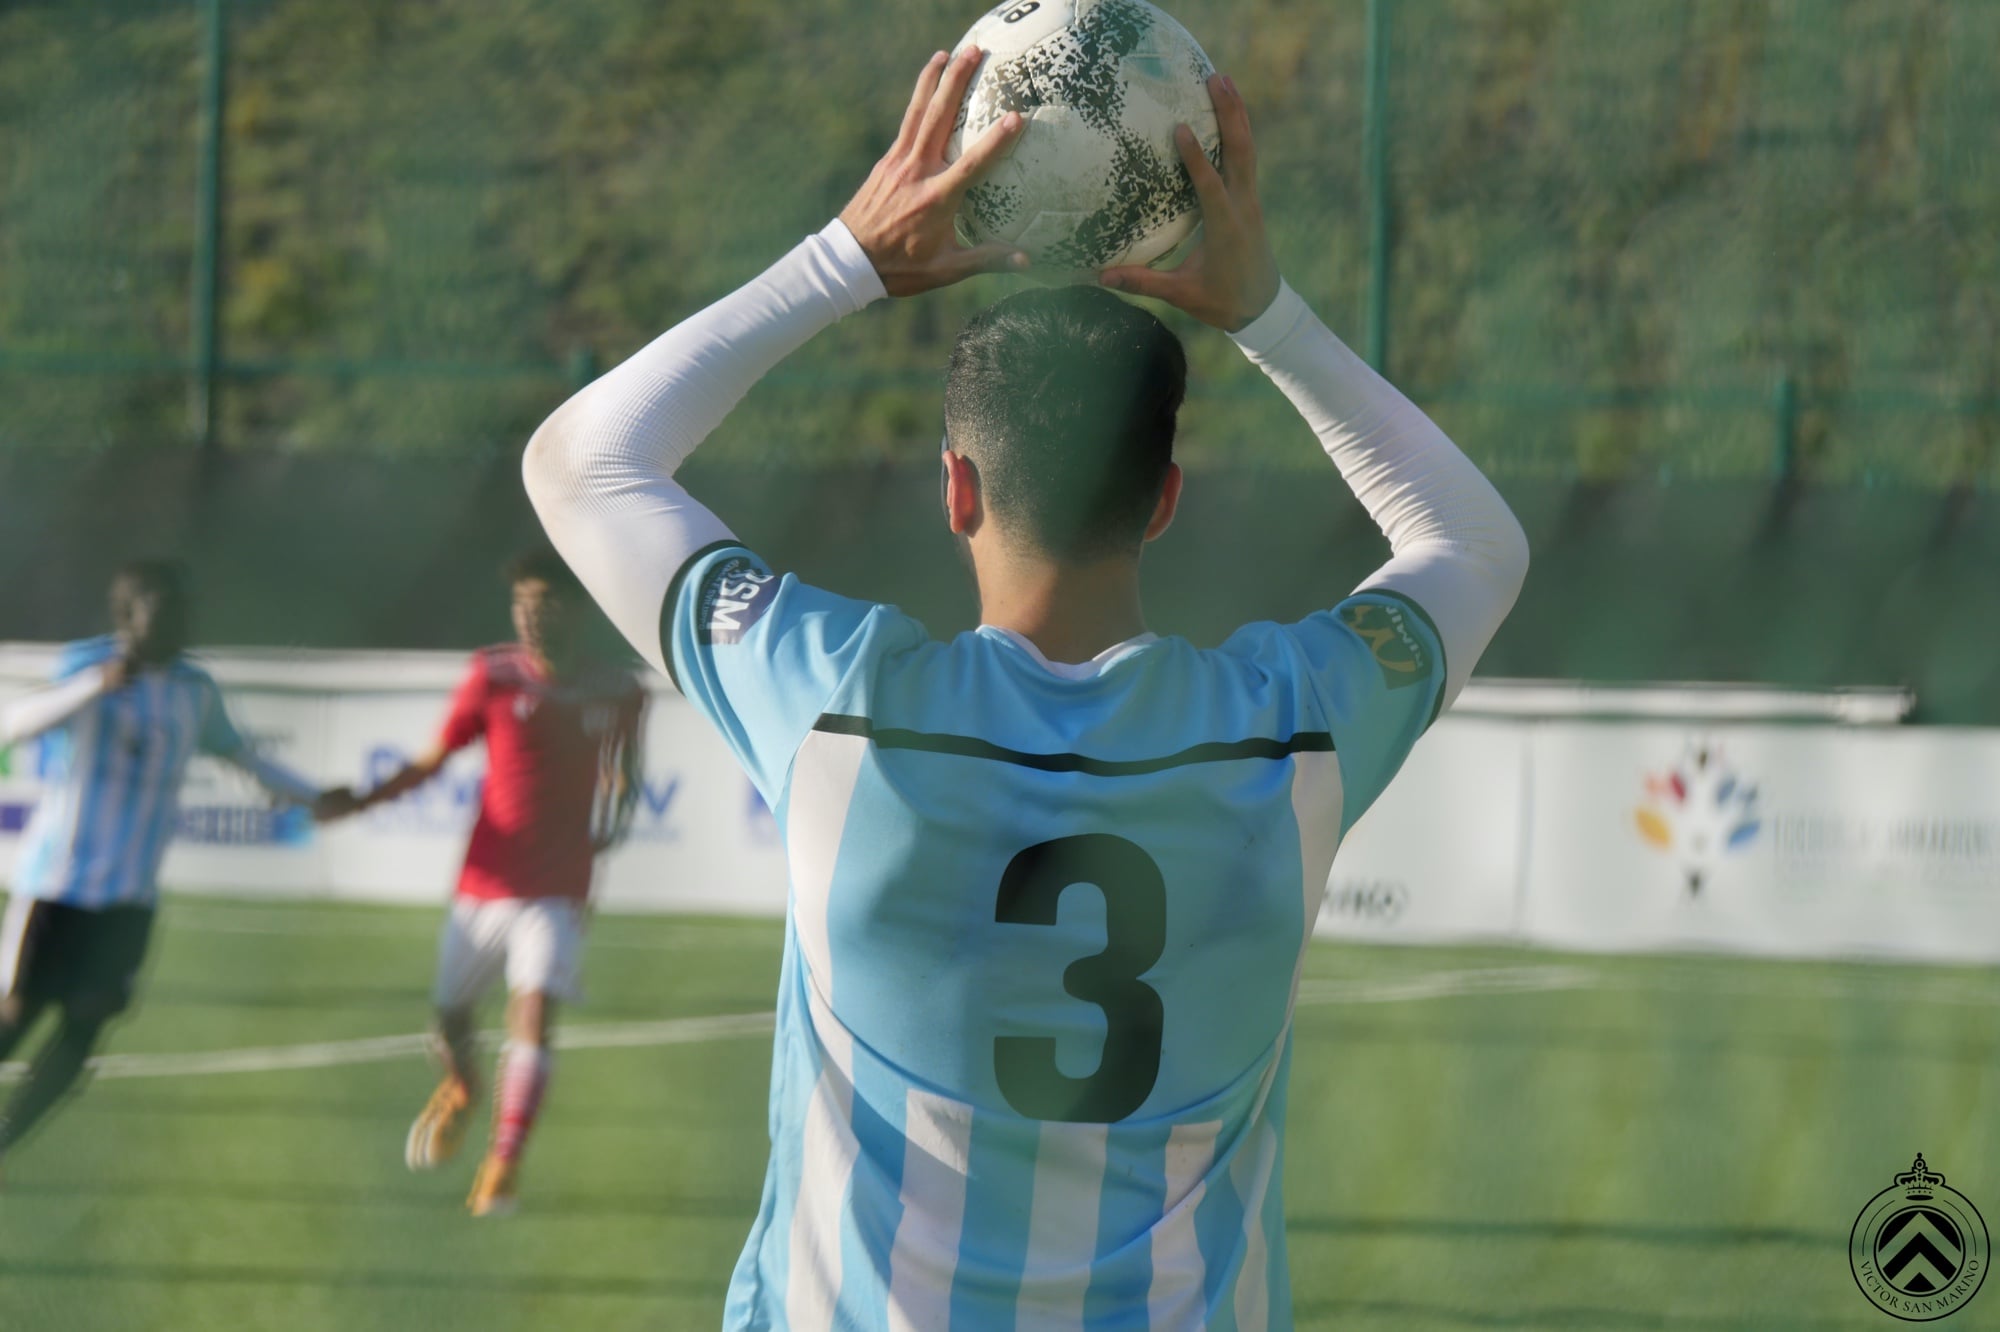 Calcio, mercoledì a Castenaso il debutto del Victor San Marino ai playoff regionali